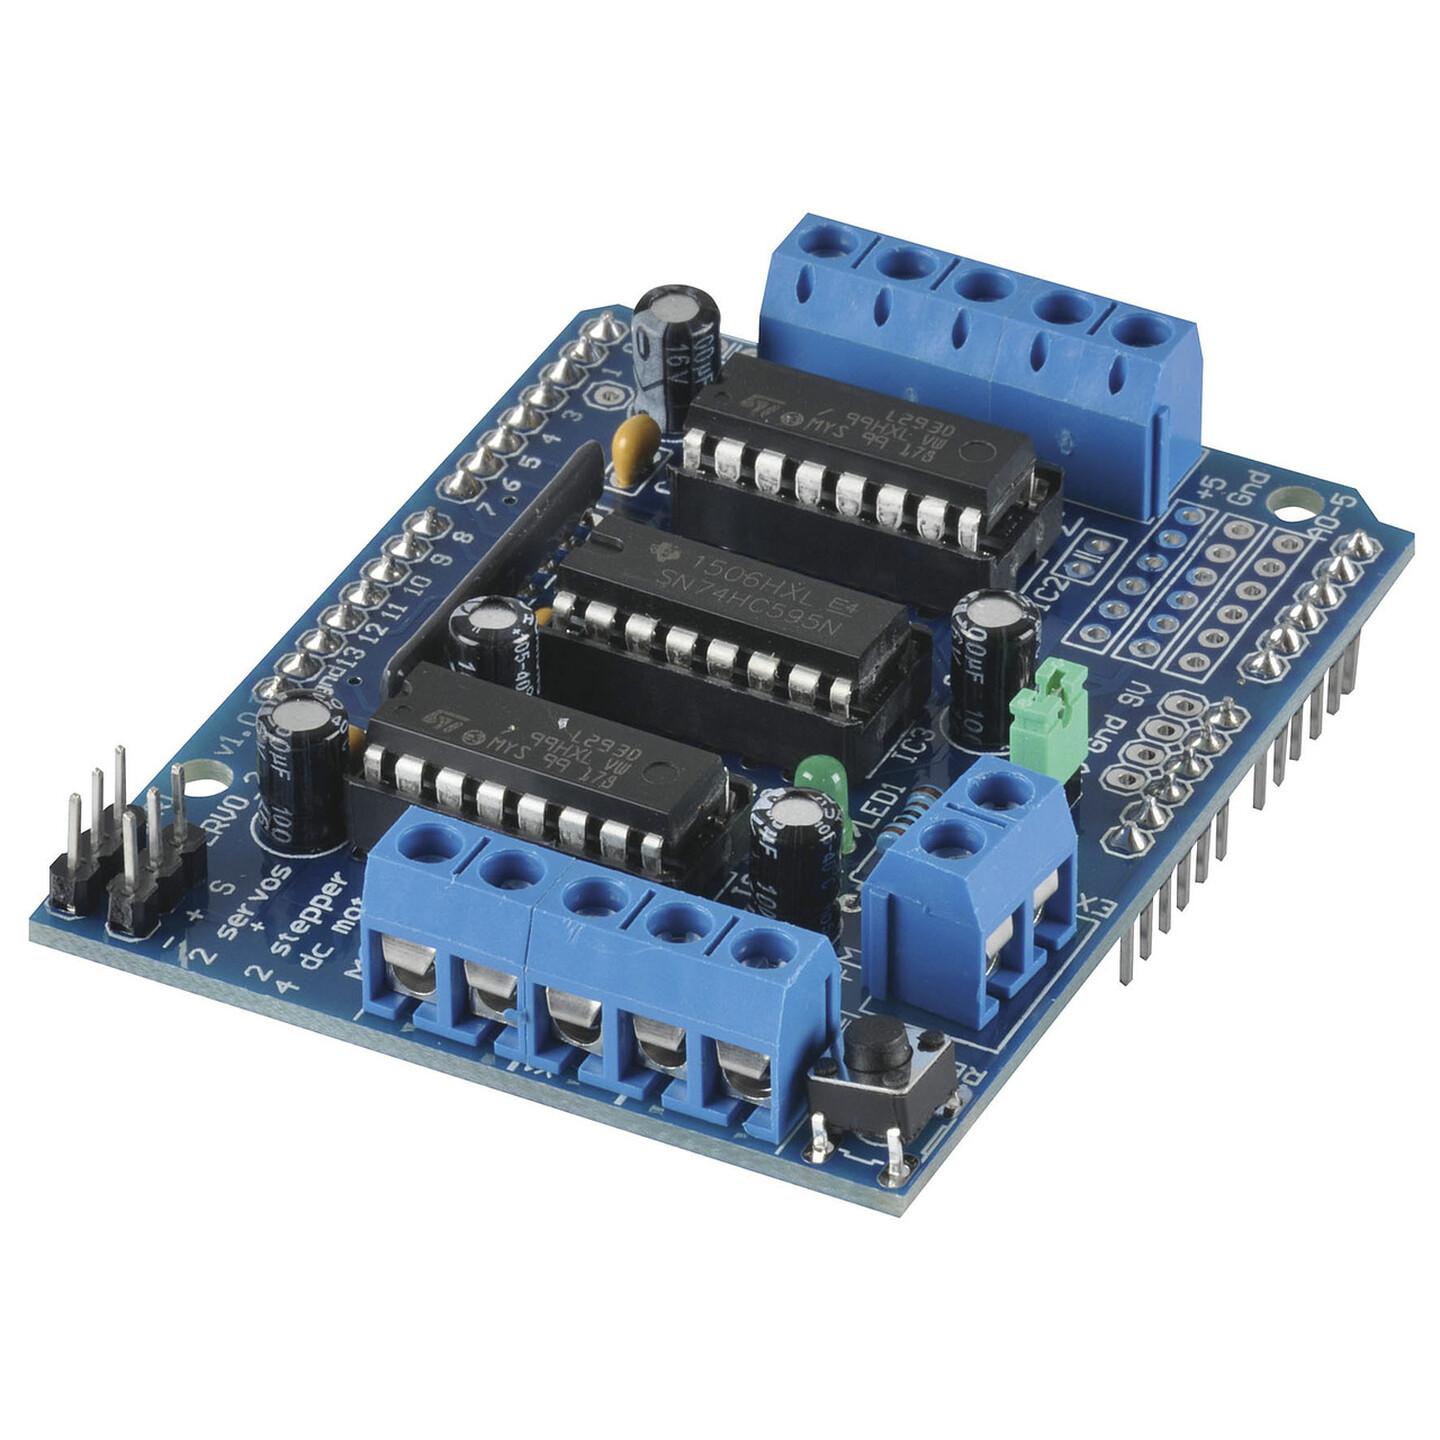 Duinotech Arduino Compatible Motor Servo Controller Module